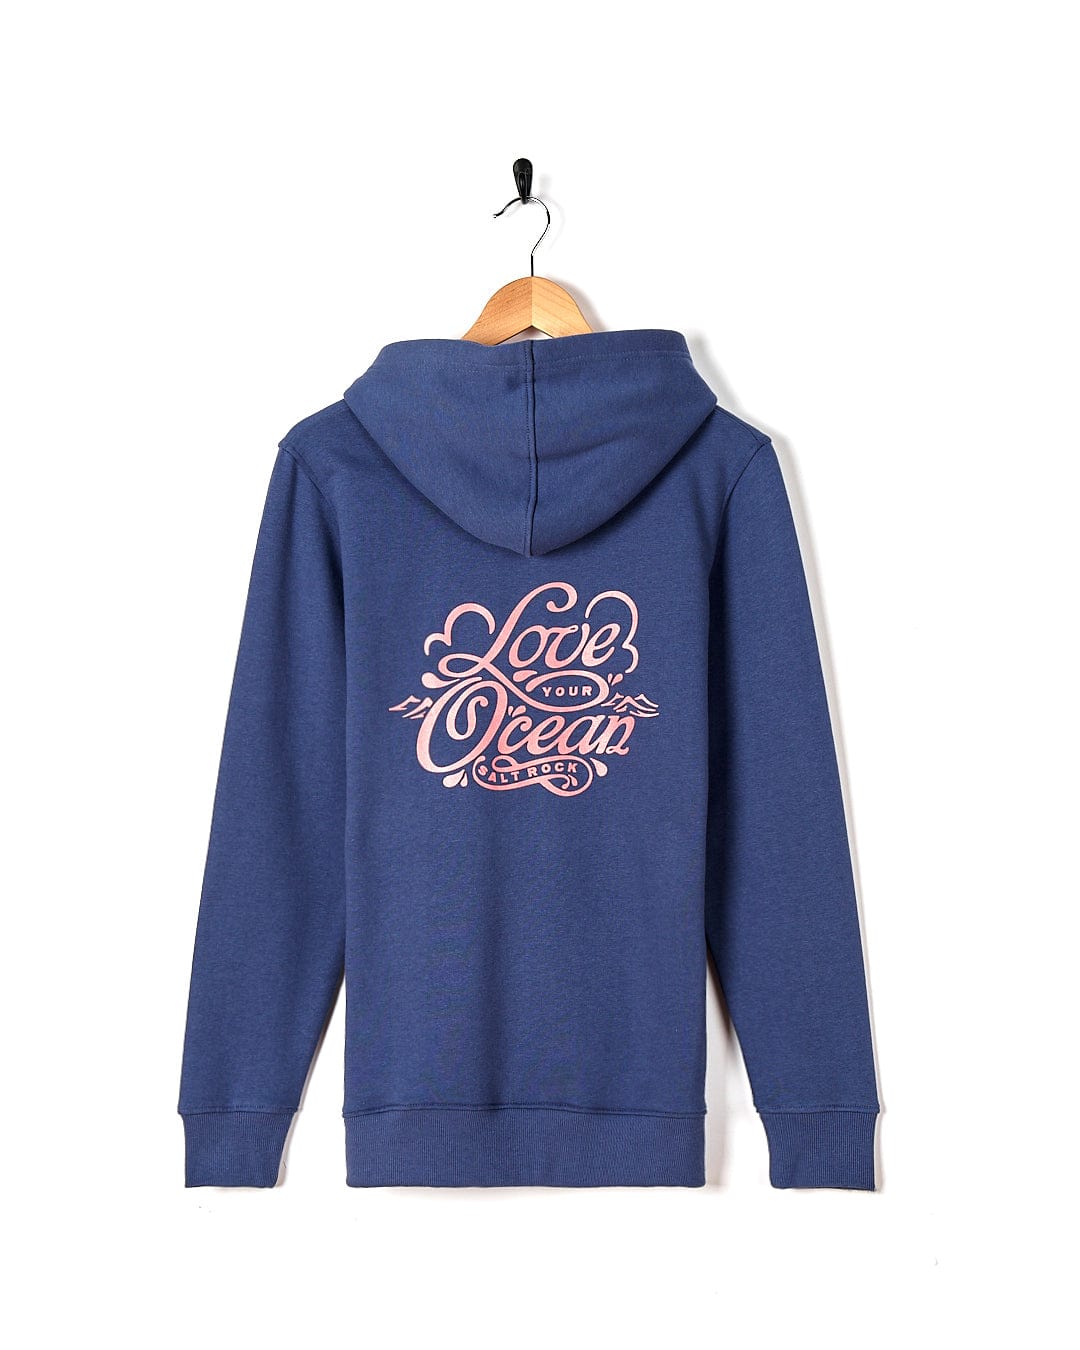 A Love Your Ocean - Womens Zip Hood - Dark Blue hoodie with the Saltrock brand on it.